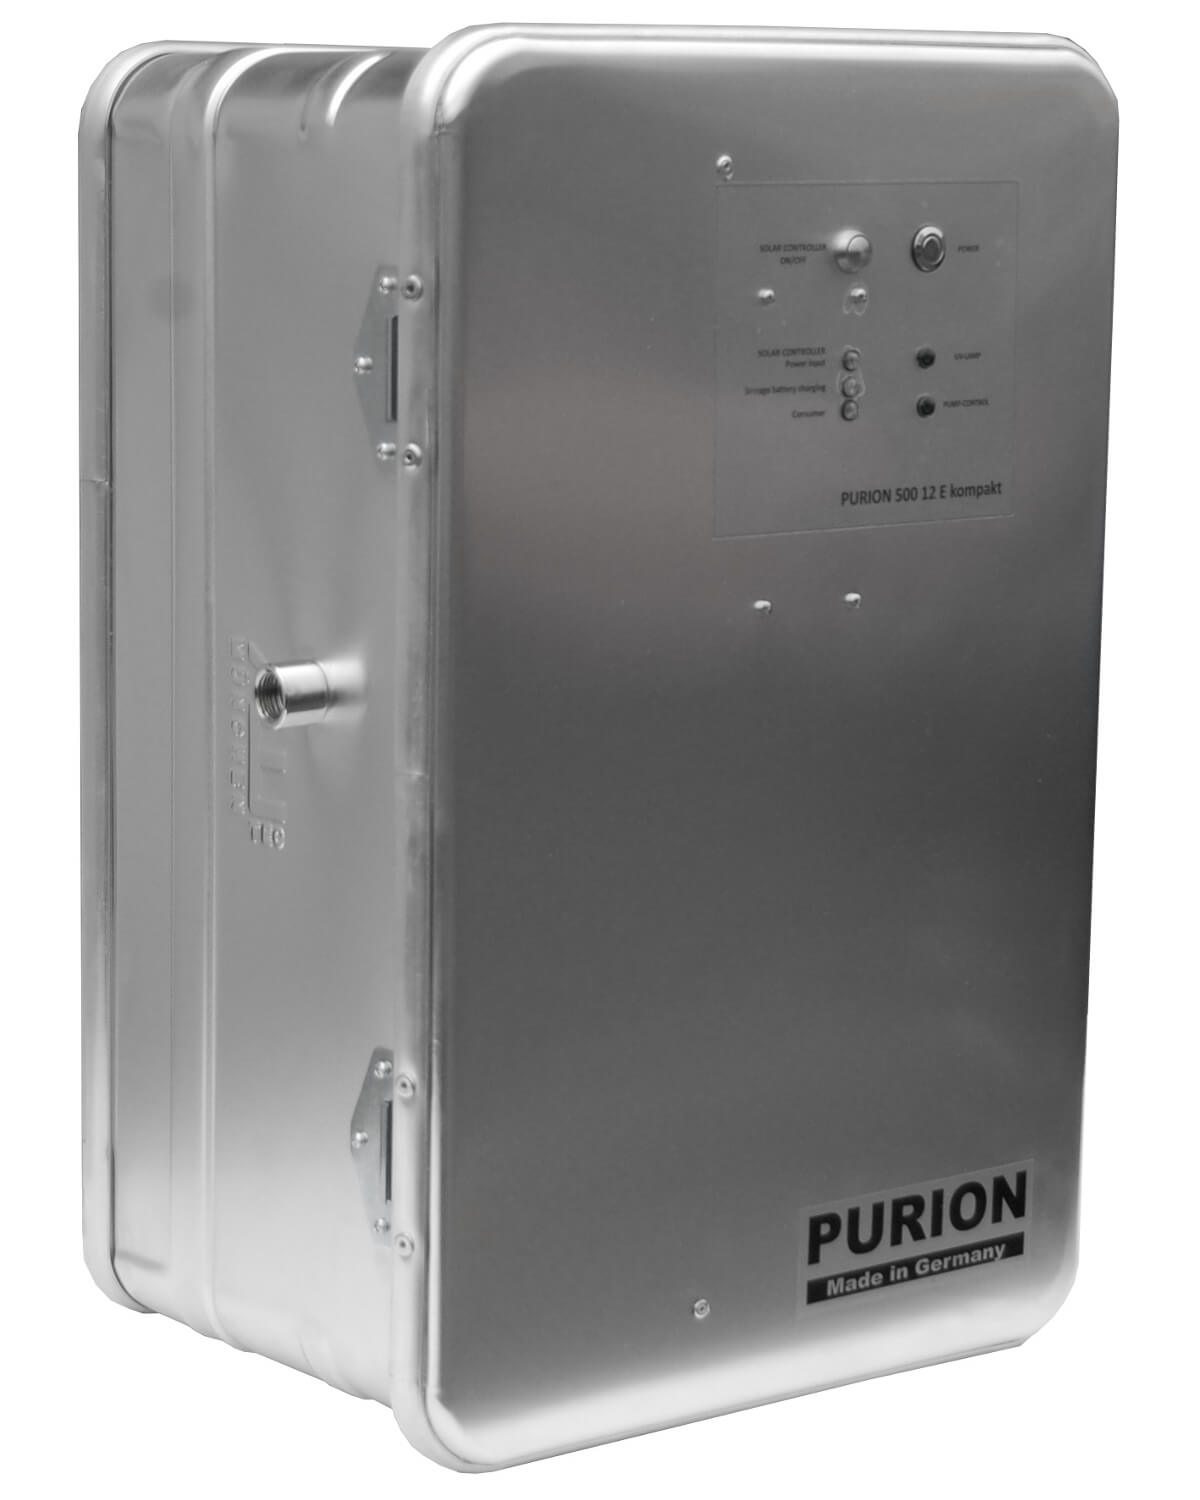 Die PURION Tropenbox der PURION GmbH ist eine UV-C-Desinfektionsanlage, die sich ideal für den Einsatz im Trinkwassersystem eignet. Zur wirksamen Behandlung kann es auch in der Tropenbox eingesetzt werden.